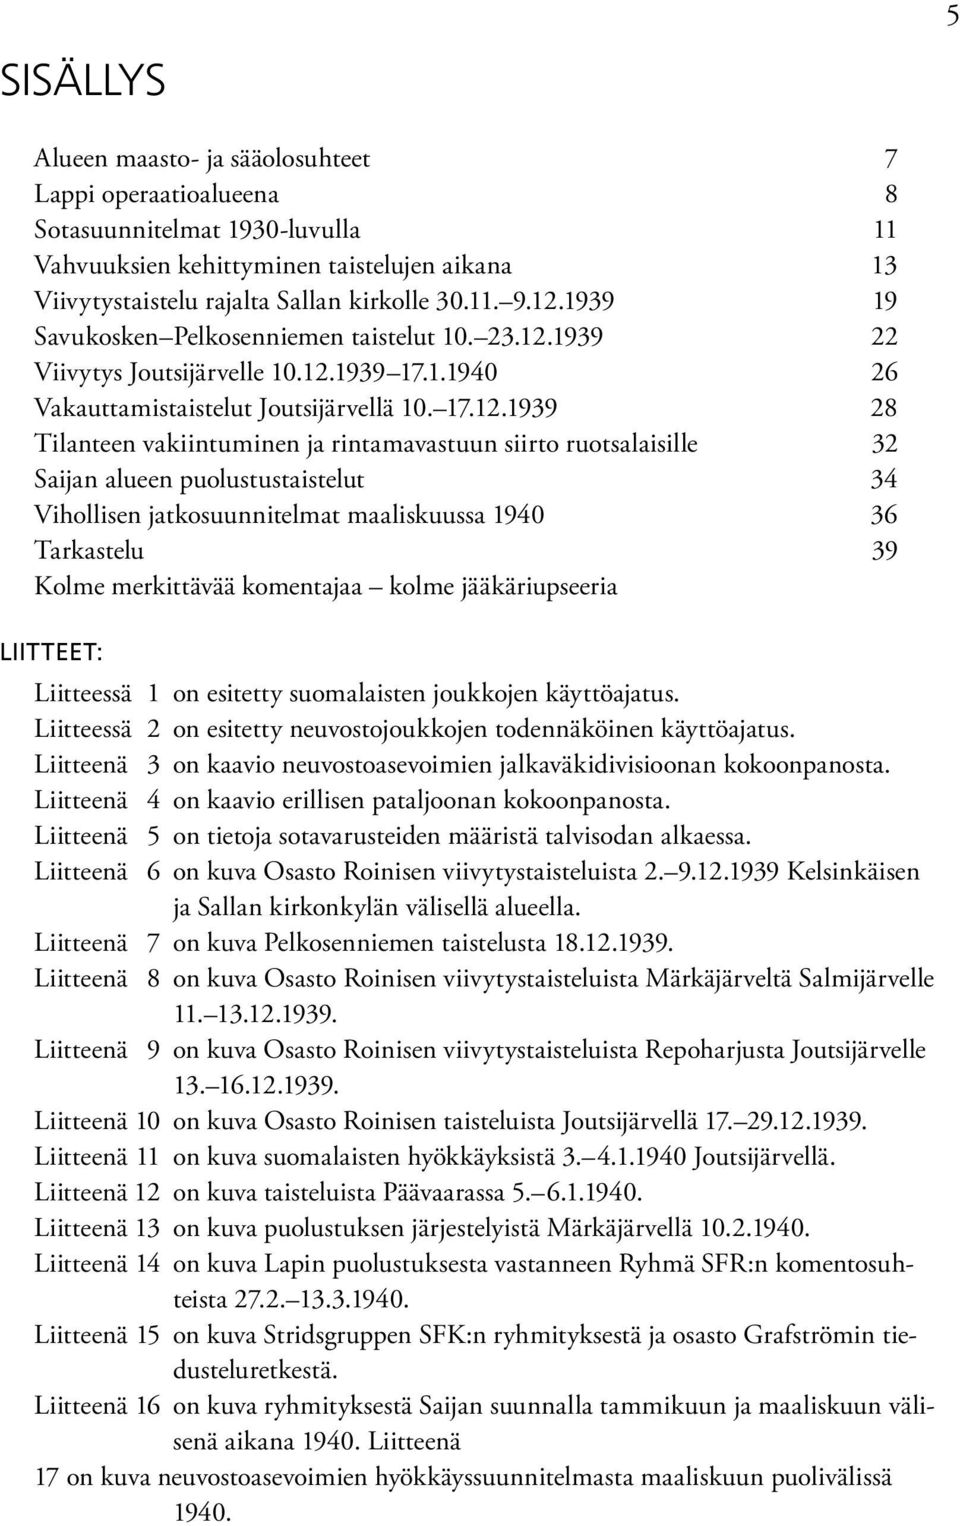 rintamavastuun siirto ruotsalaisille 32 Saijan alueen puolustustaistelut 34 Vihollisen jatkosuunnitelmat maaliskuussa 1940 36 Tarkastelu 39 Kolme merkittävää komentajaa kolme jääkäriupseeria